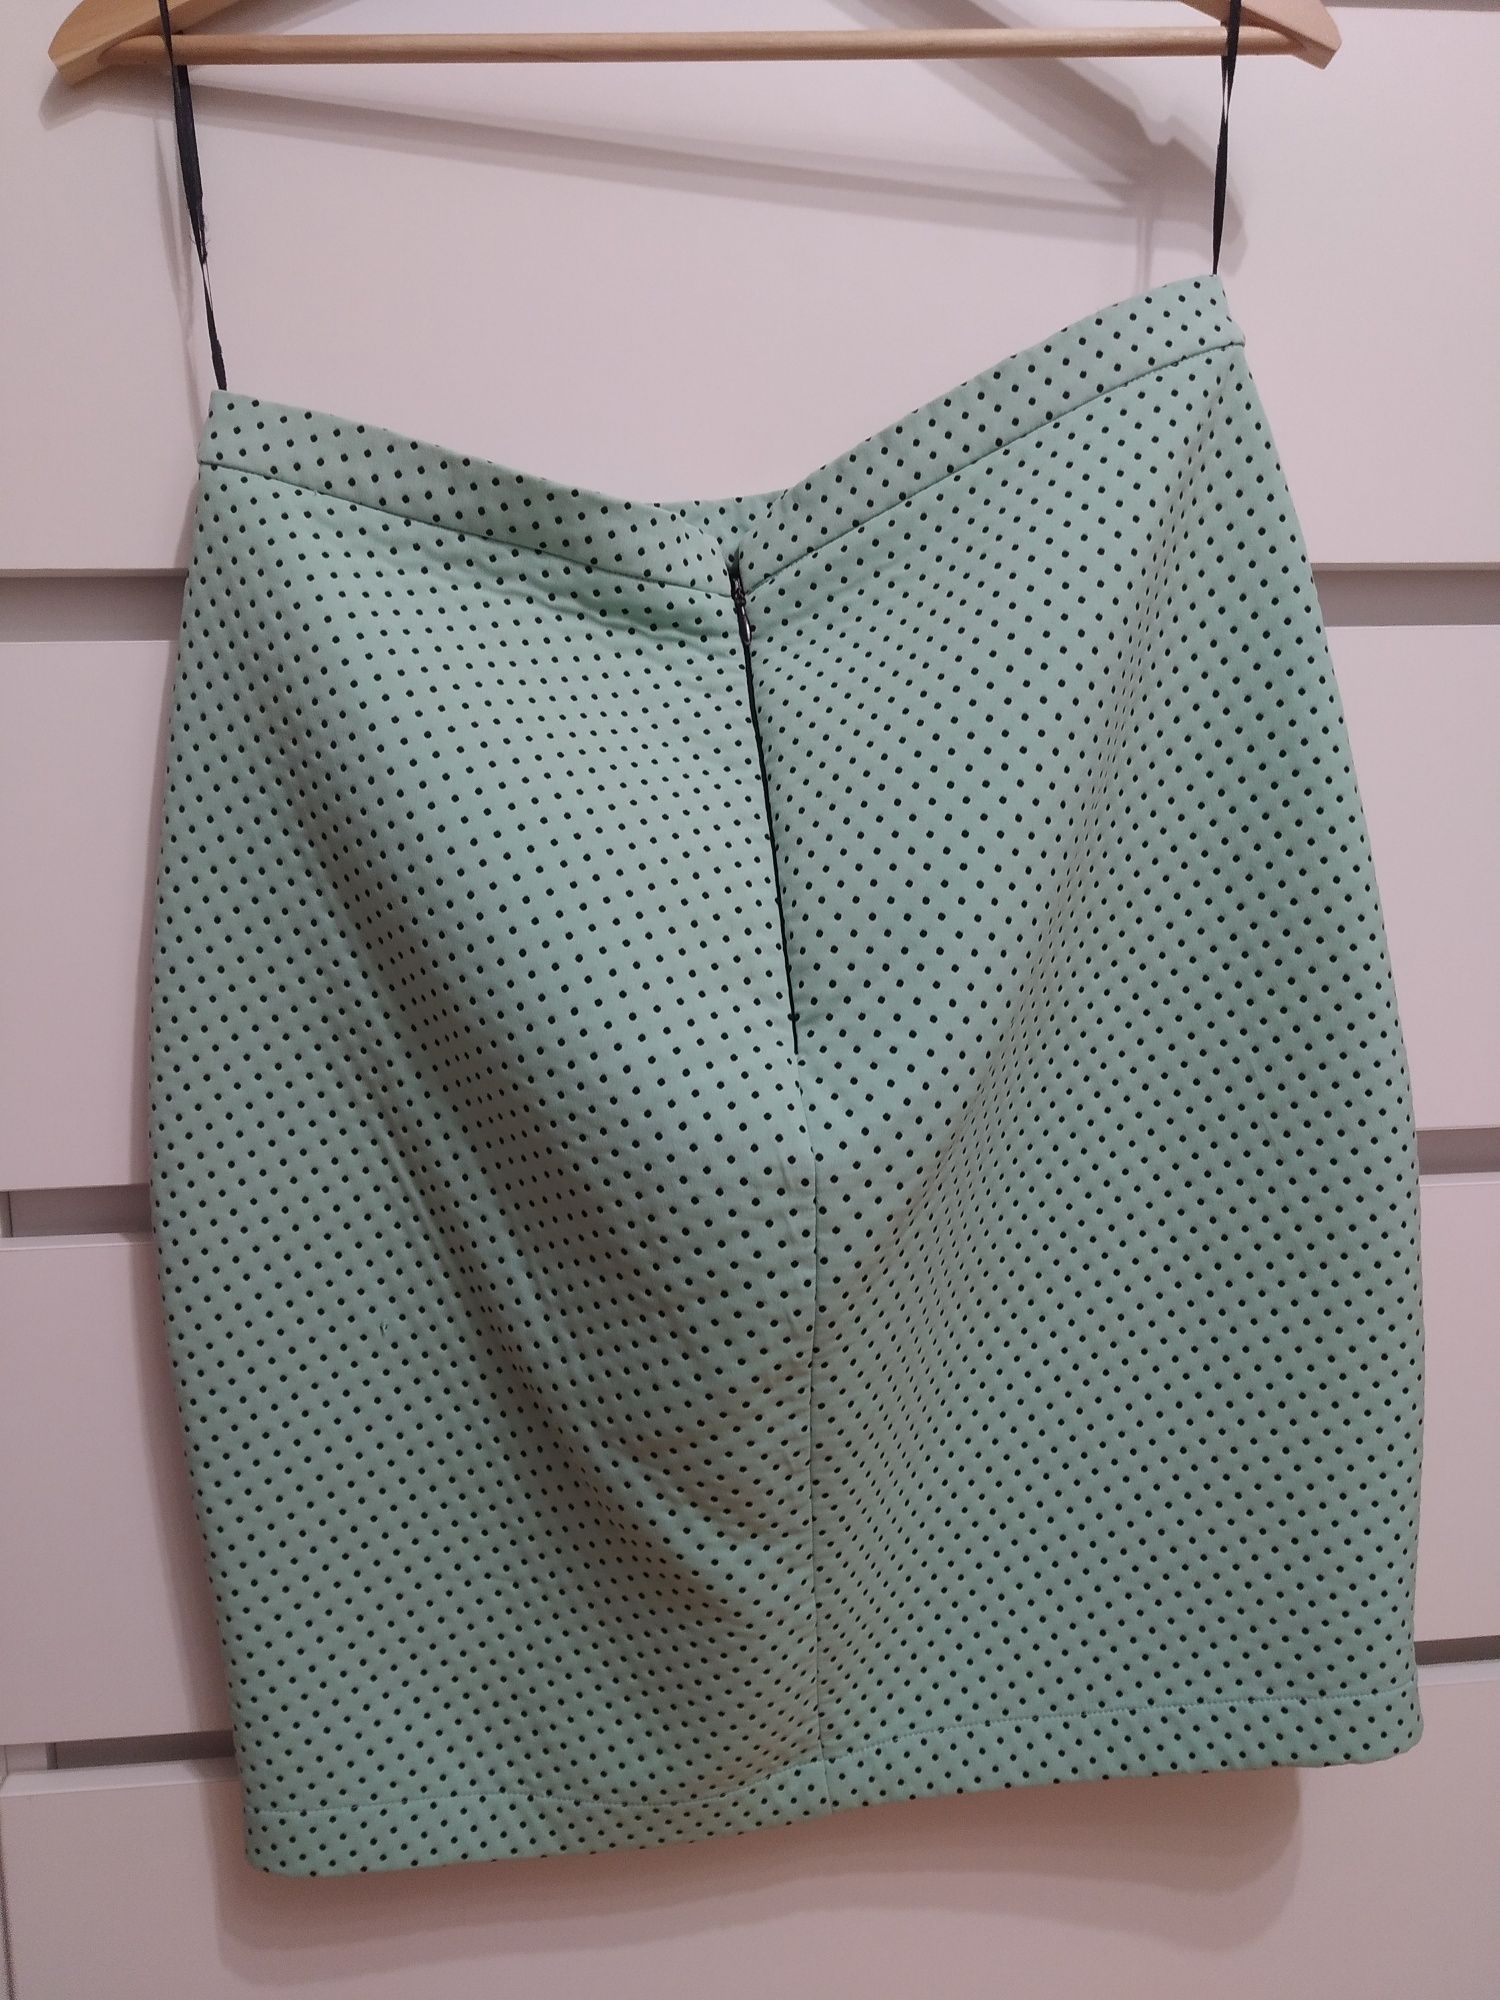 Spódnica spódniczka mini zielona miętowa w kropki Zara rozmiar L